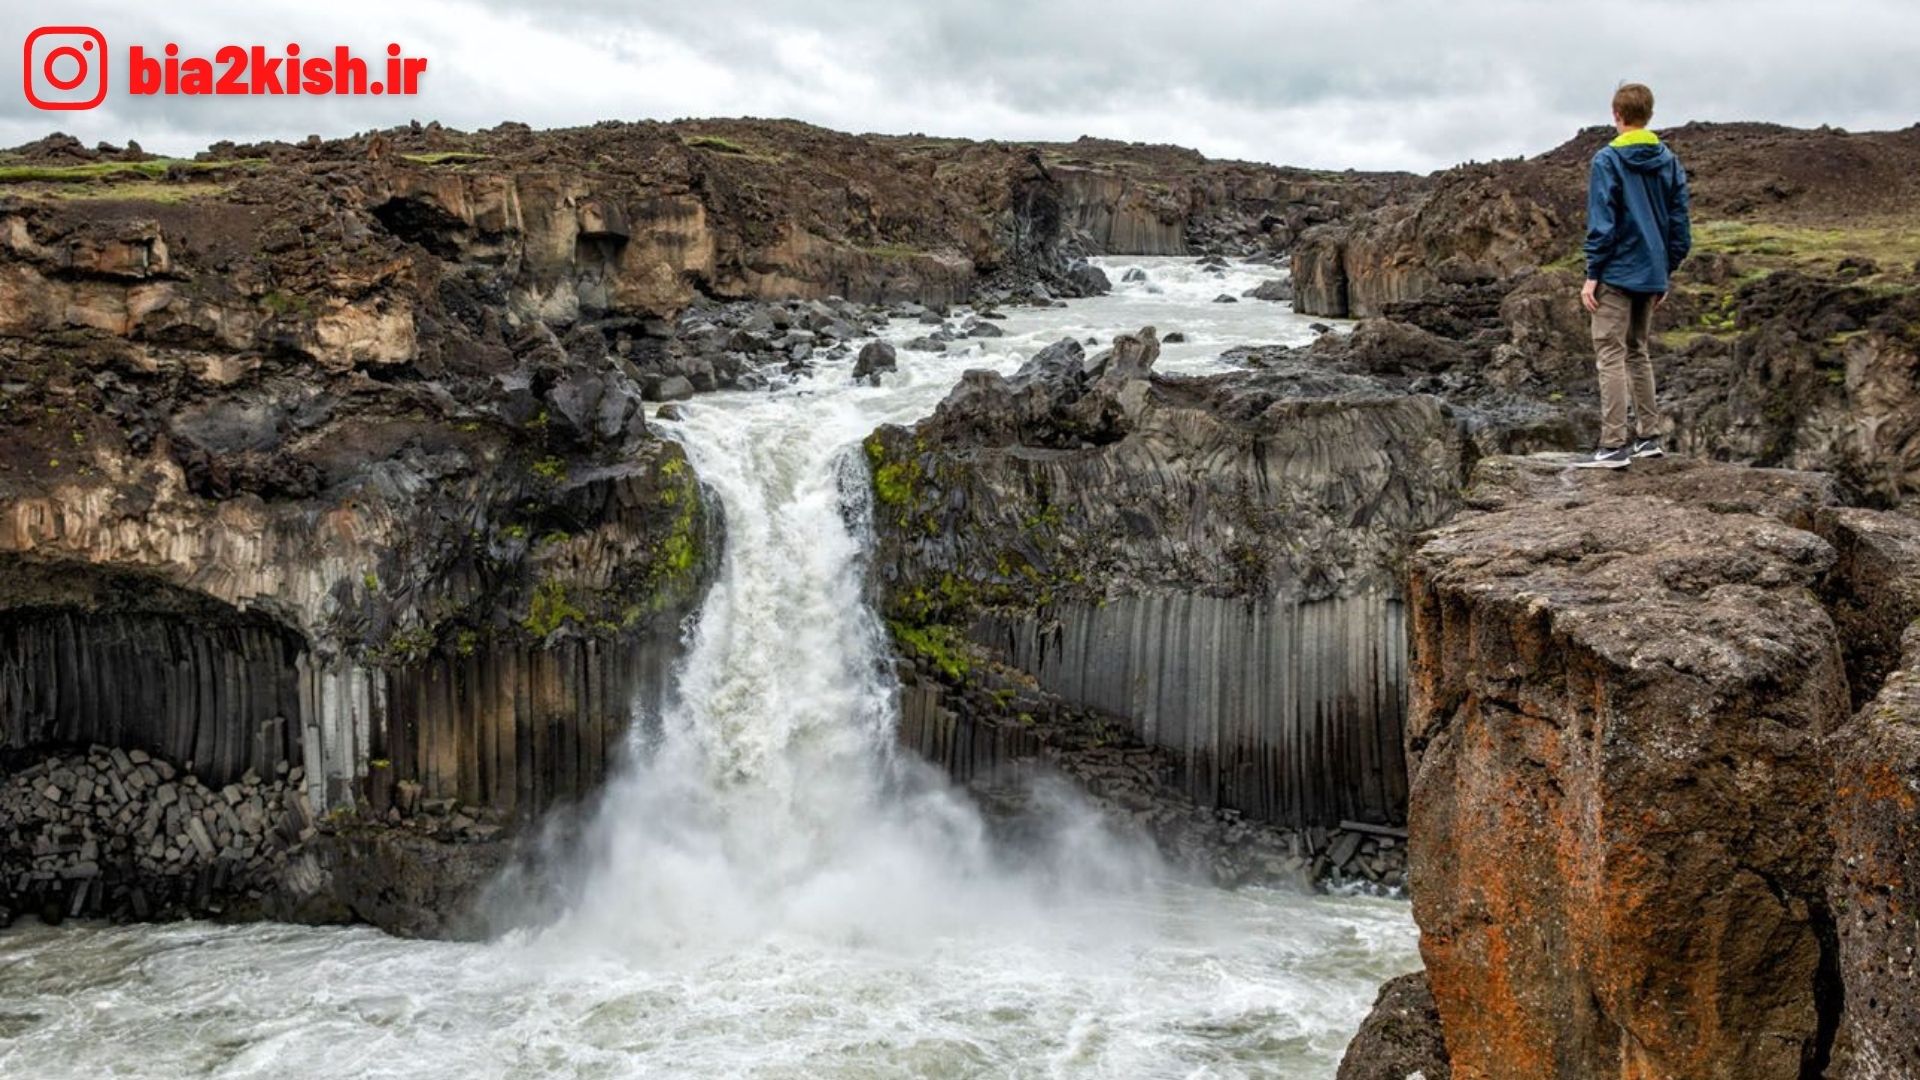 تصاویر گردشگری آبشار آلدیجارفوس